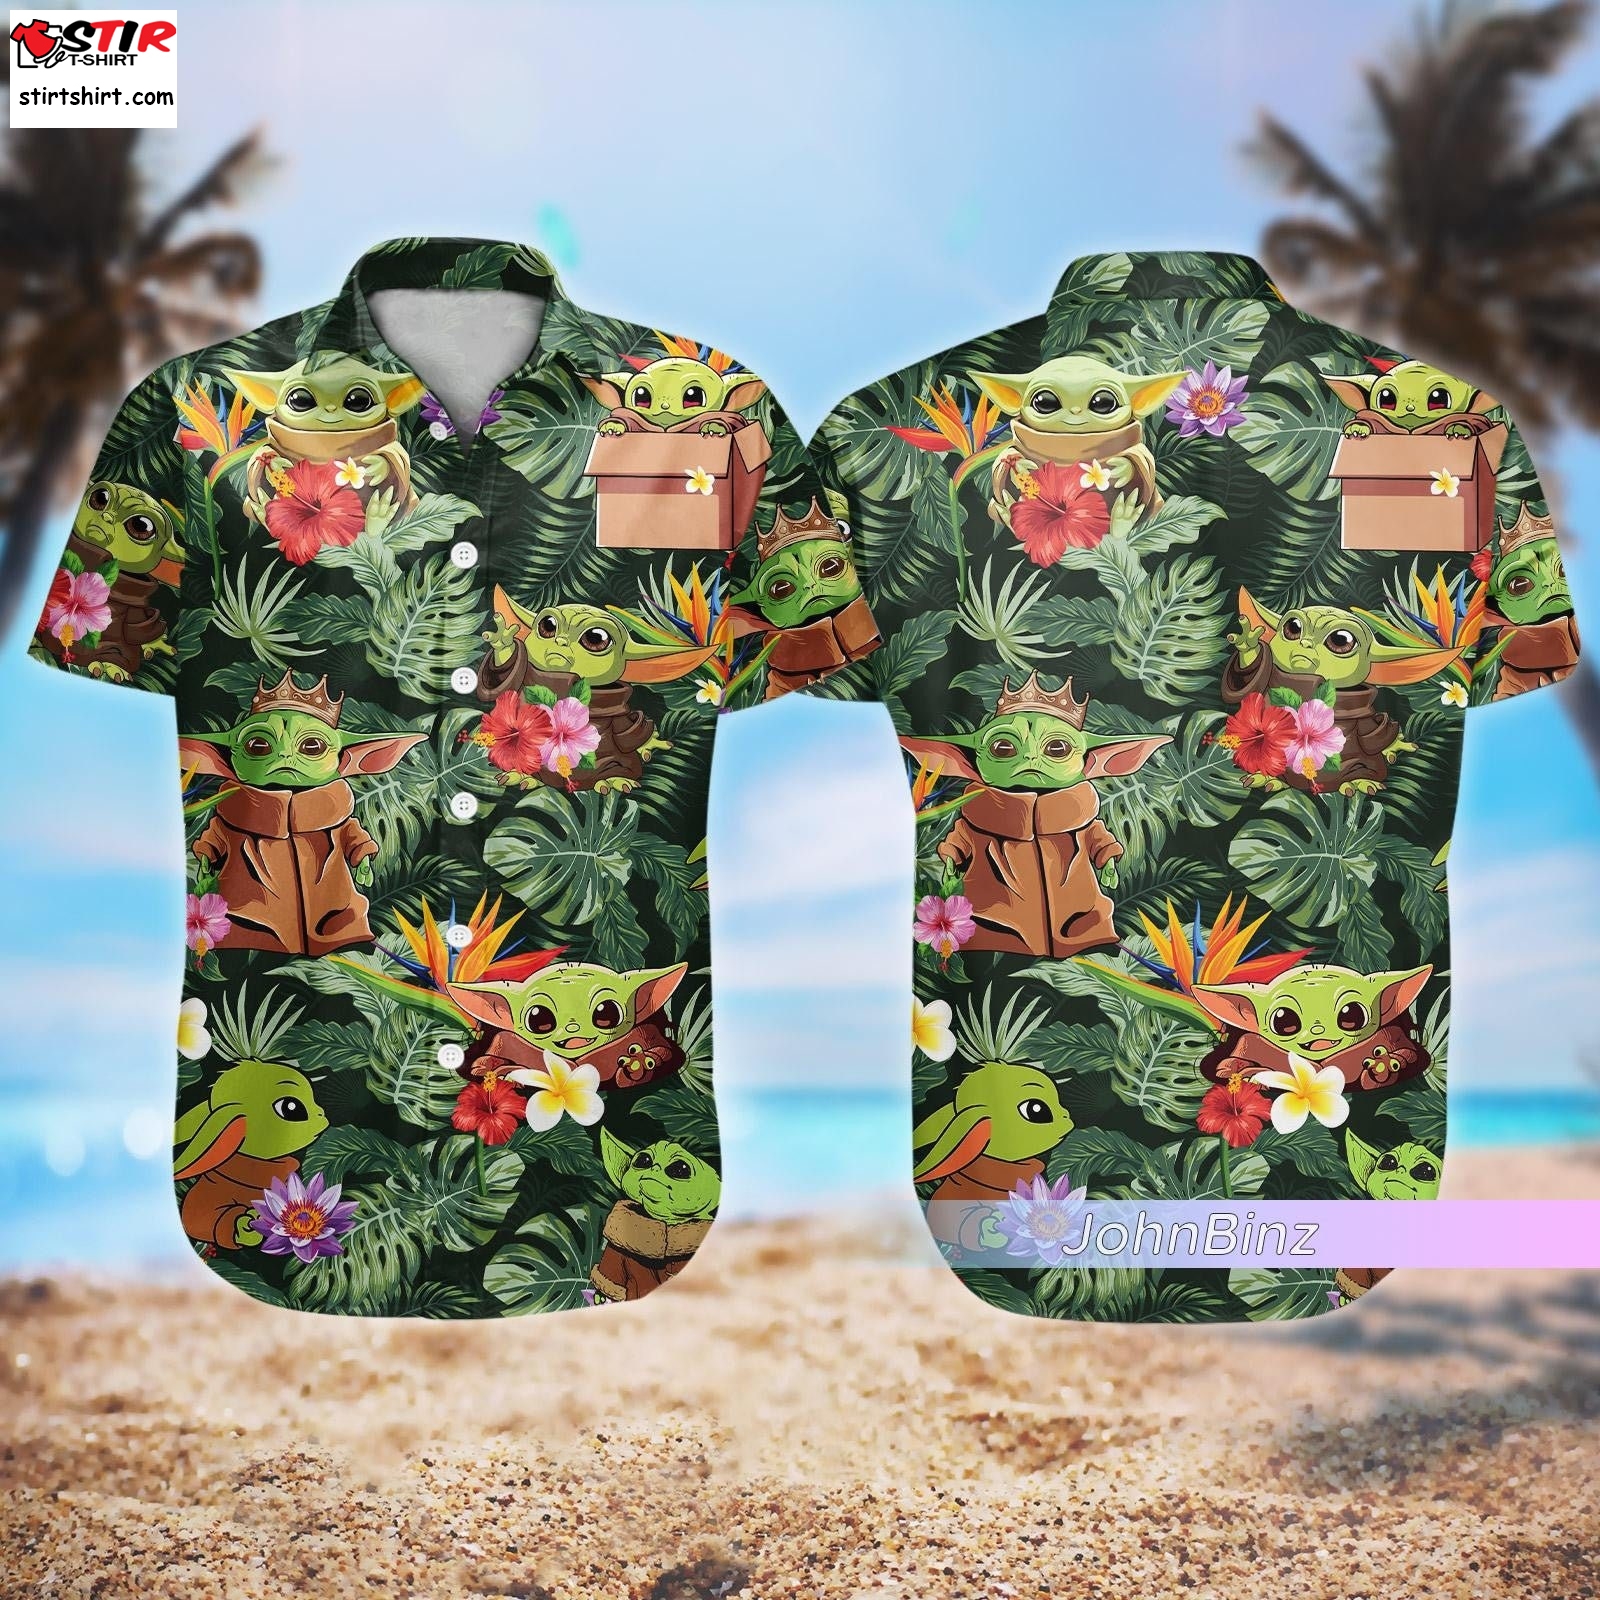 Baby Yoda Shirt, Baby Yoda The Mandalorian Hawaiian Shirt, Star Wars Button Shirt, Grogu Baby Yoda Shorts, Gifts For Him, Unisex S 5Xl Adult